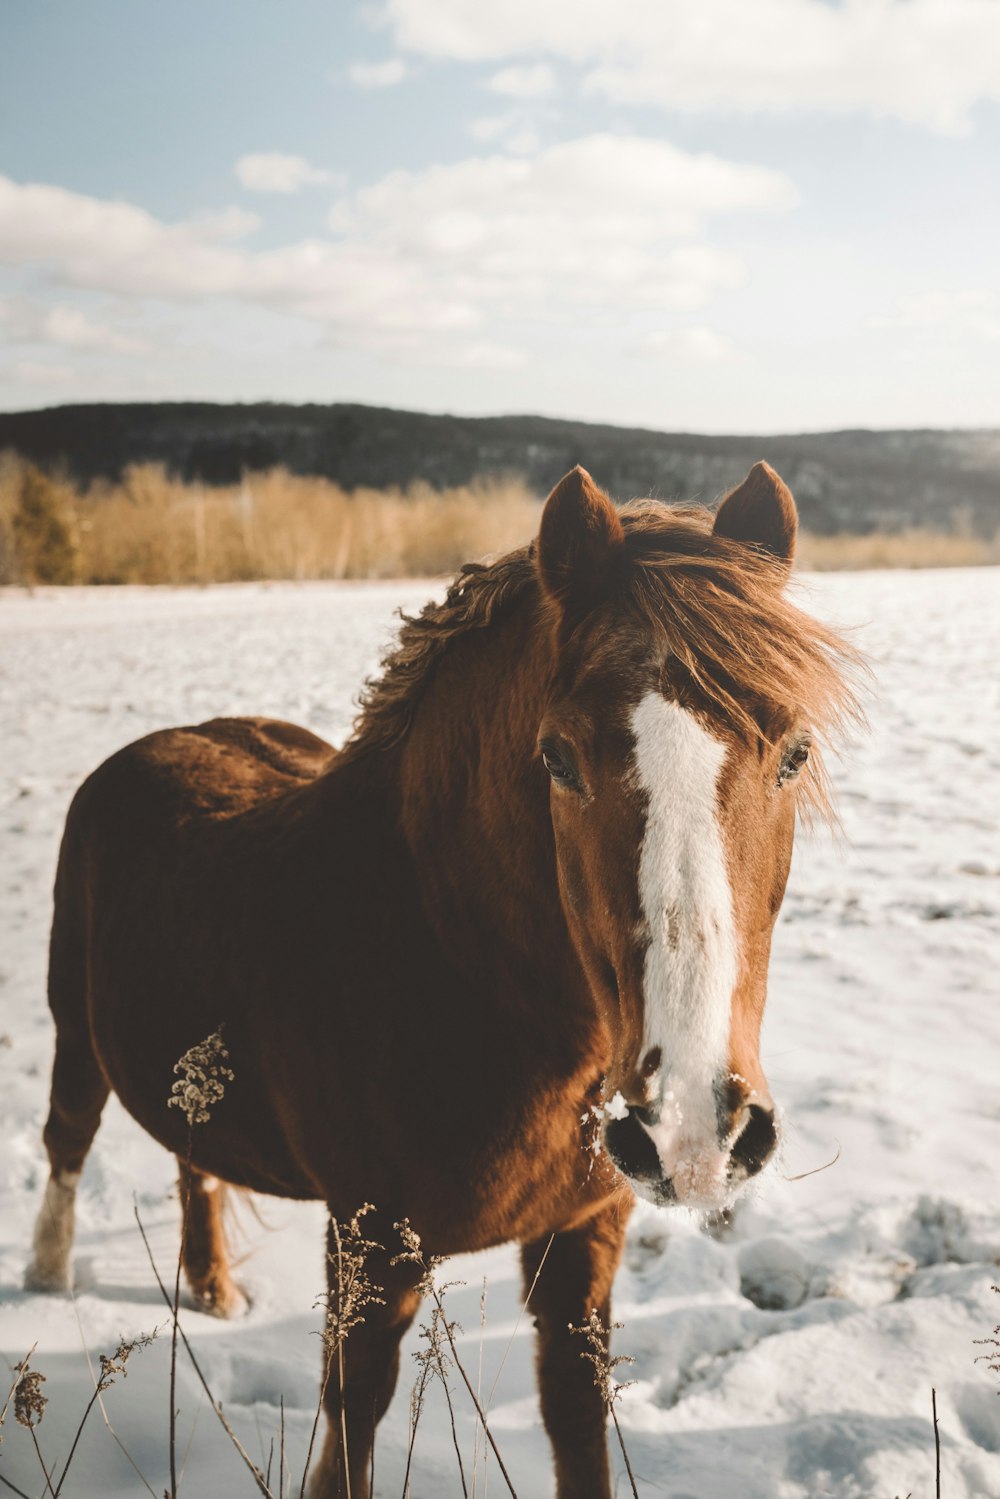 Braunes und weißes Pferd tagsüber auf Schnee stehen